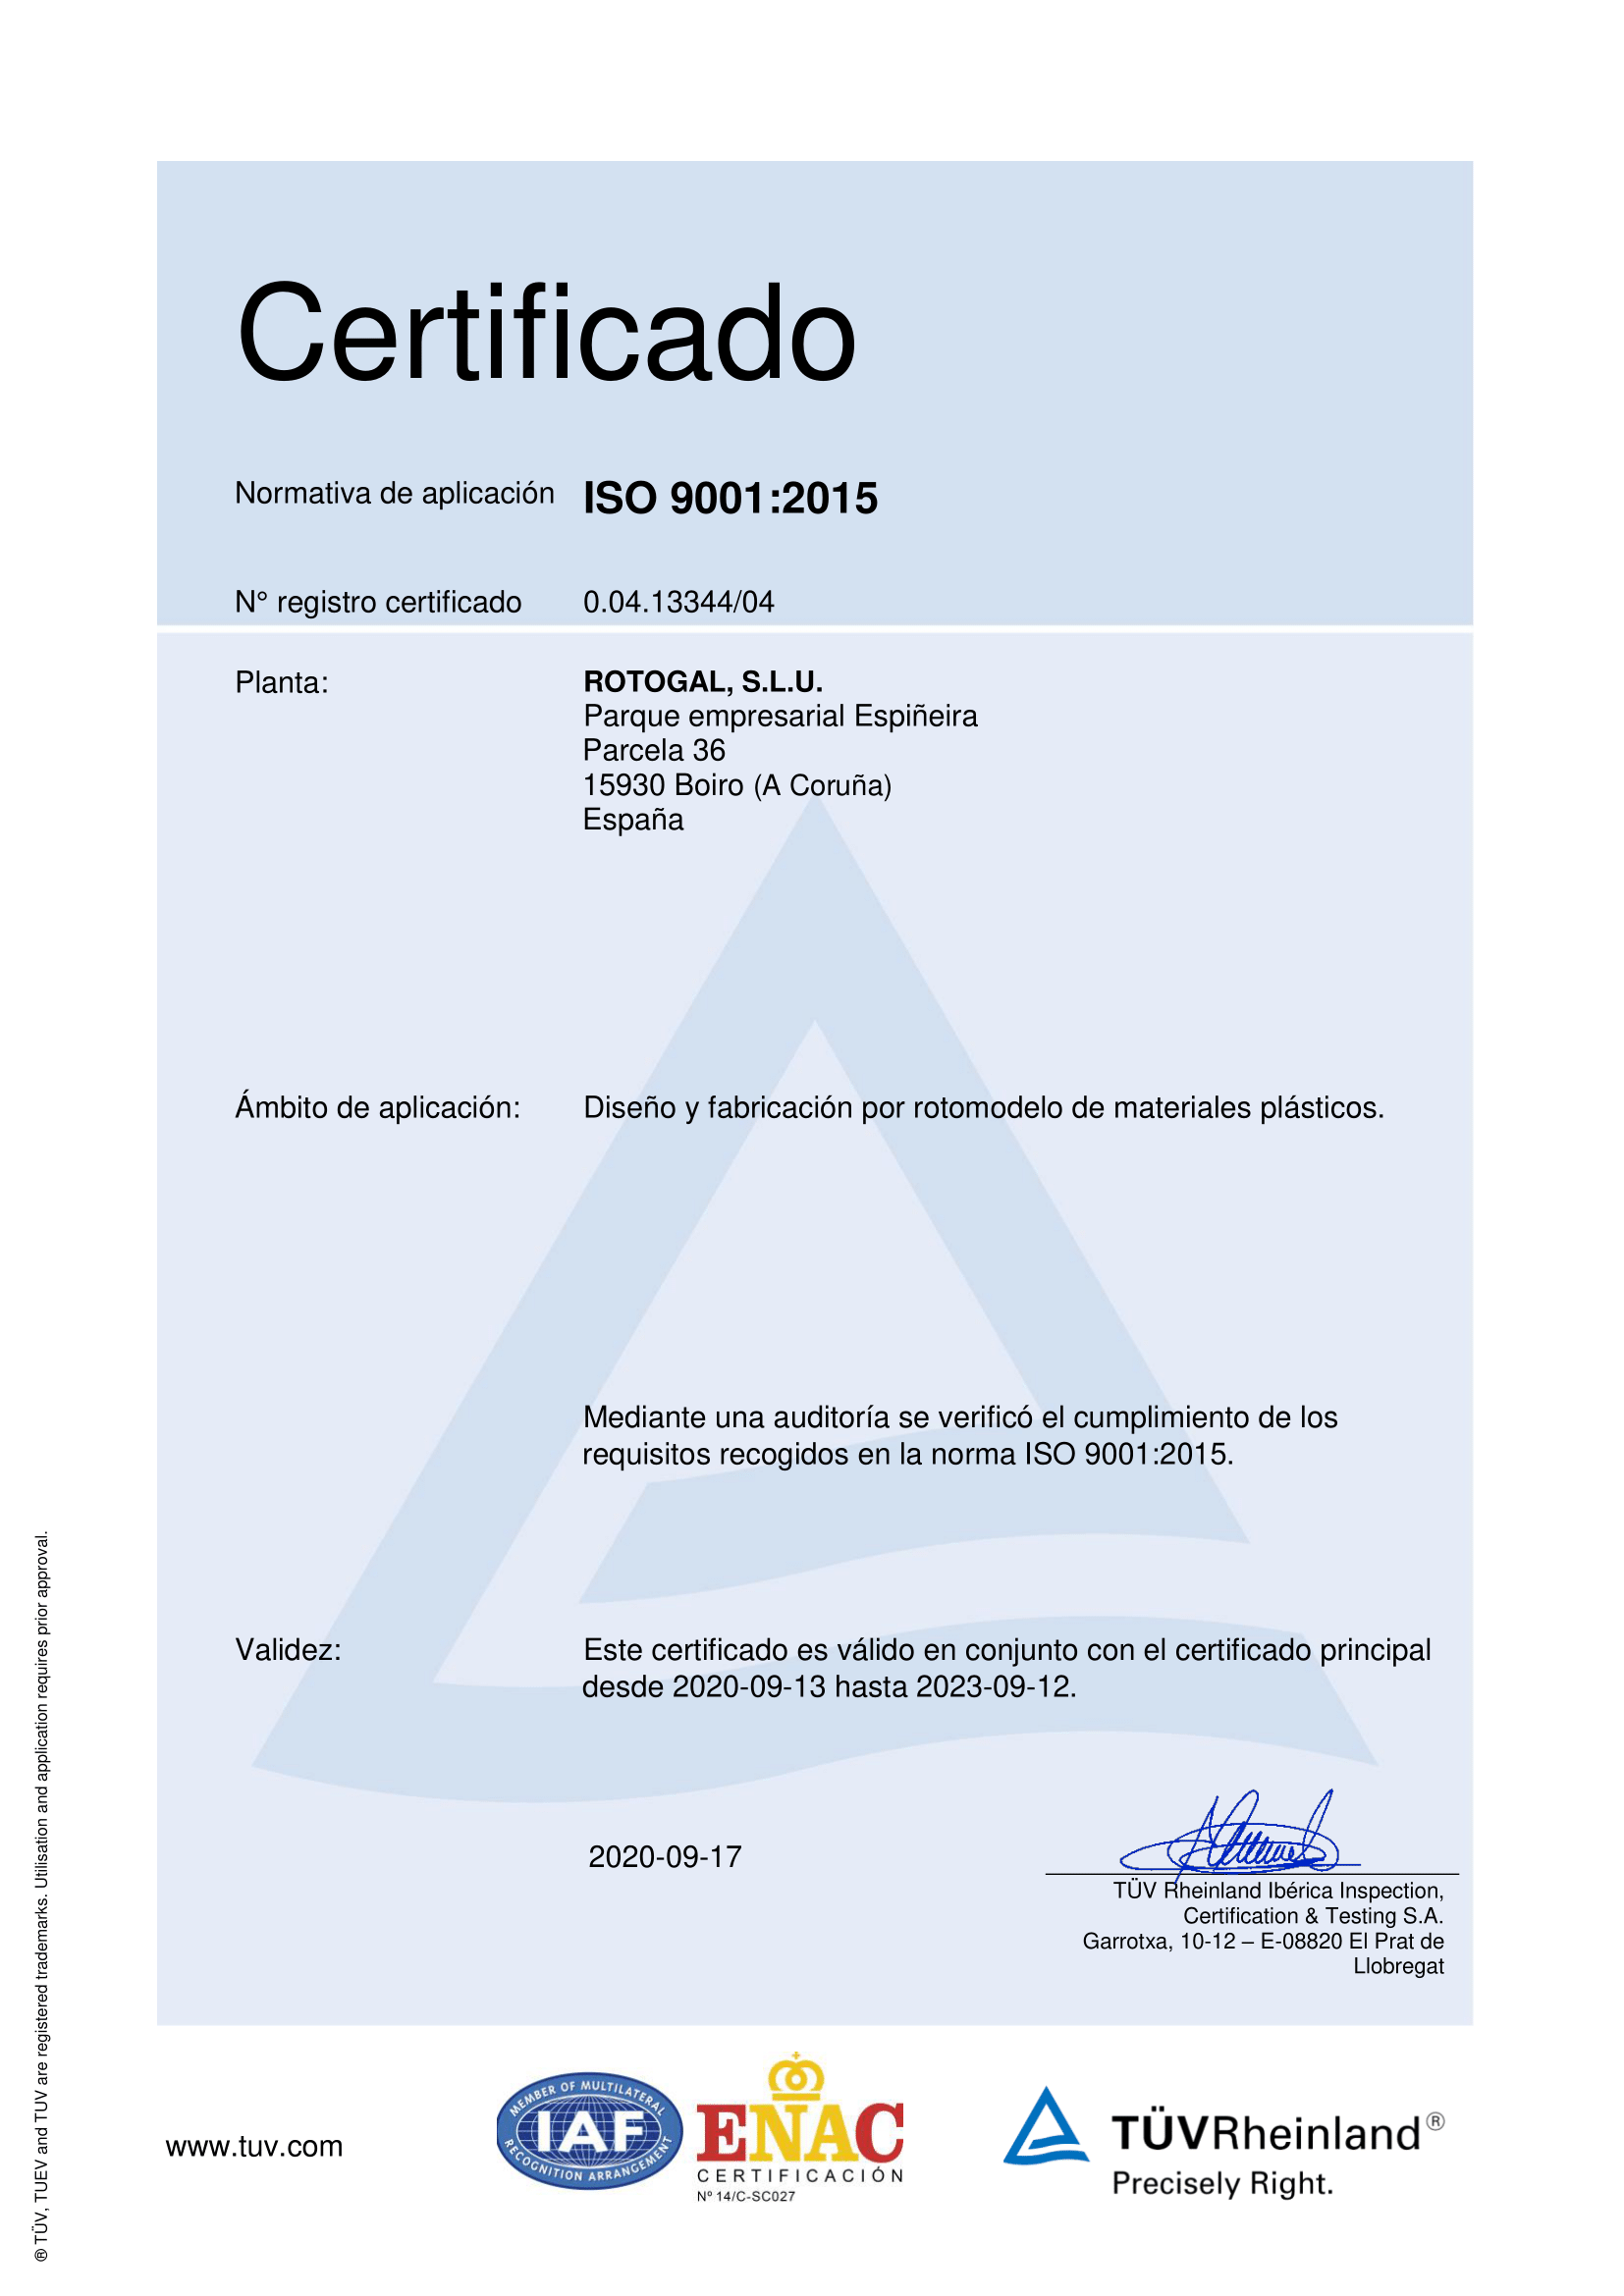 Certificación ISO 9001 Rotogal